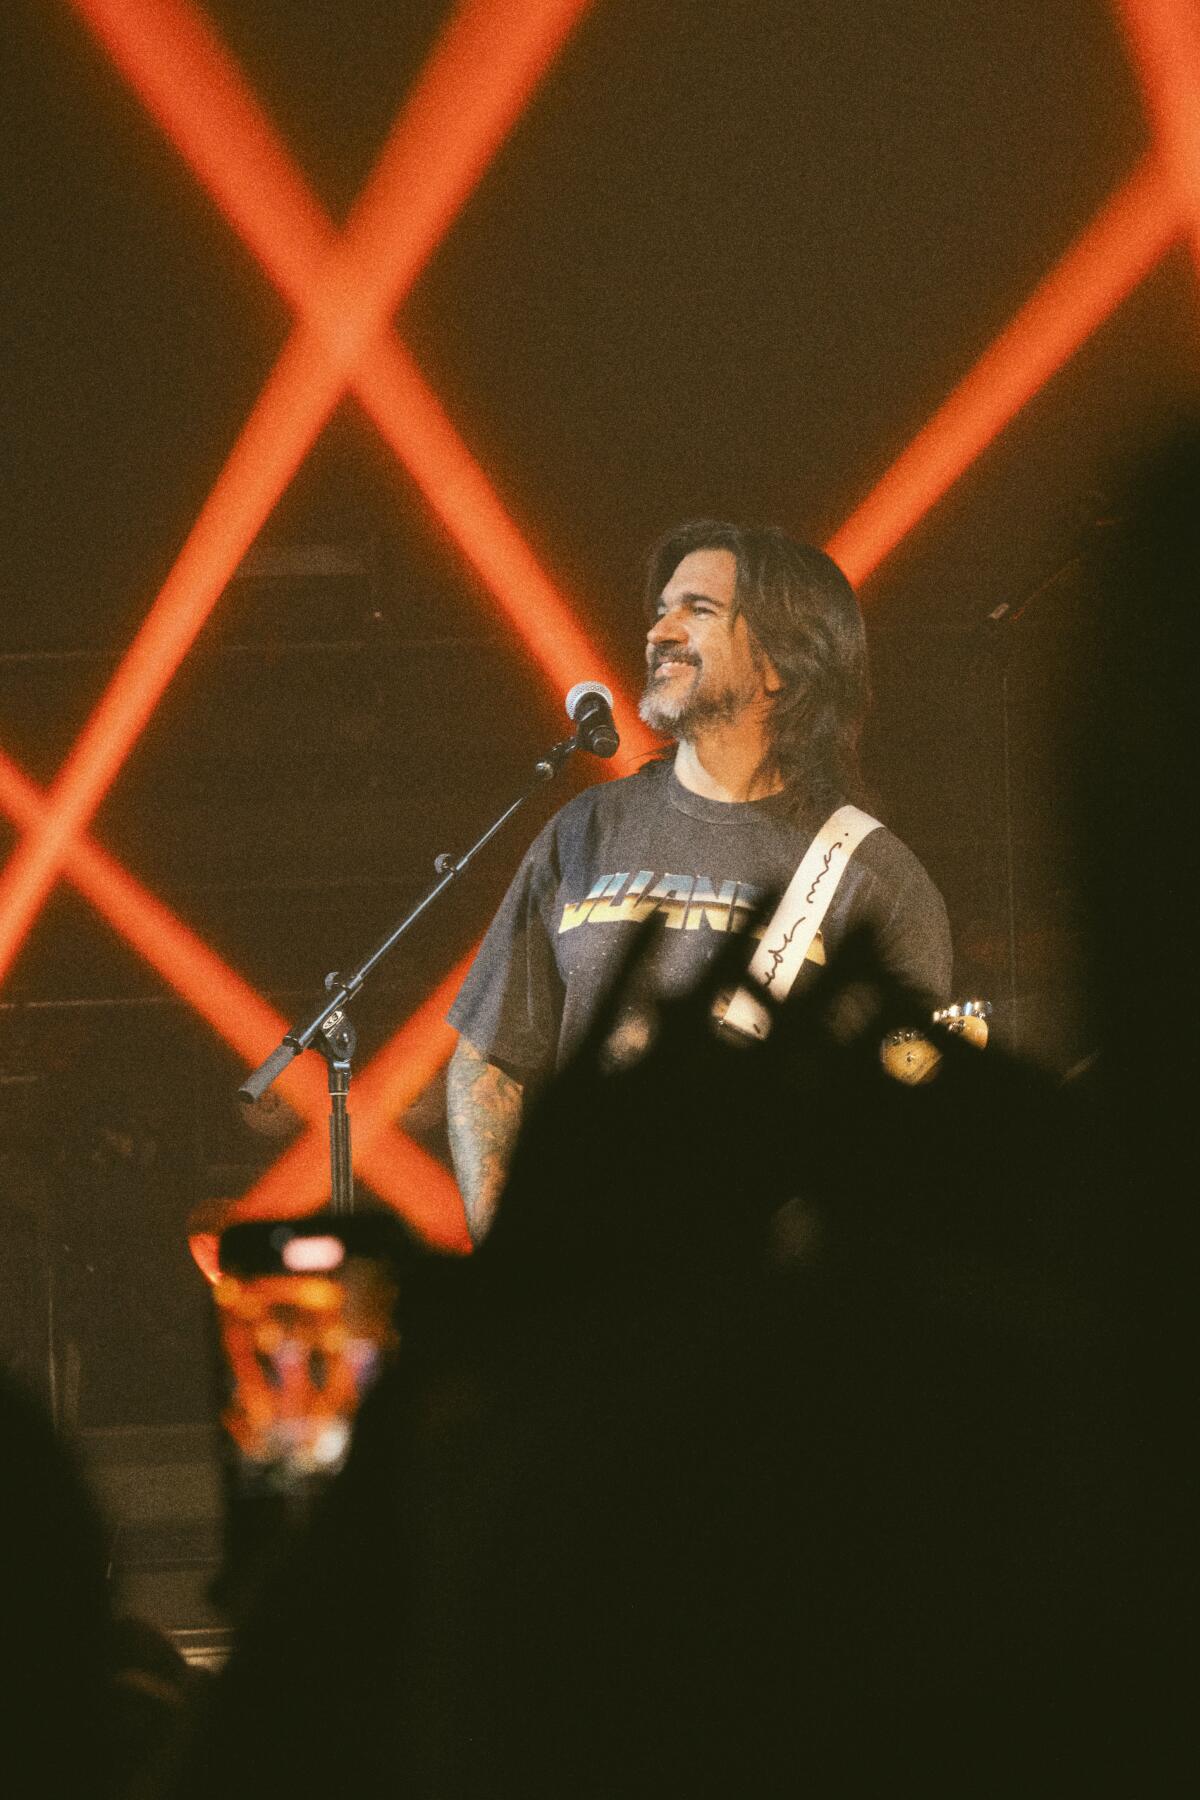 Juane trae su "Vida Cotidiana Tour" a Los Ángeles.